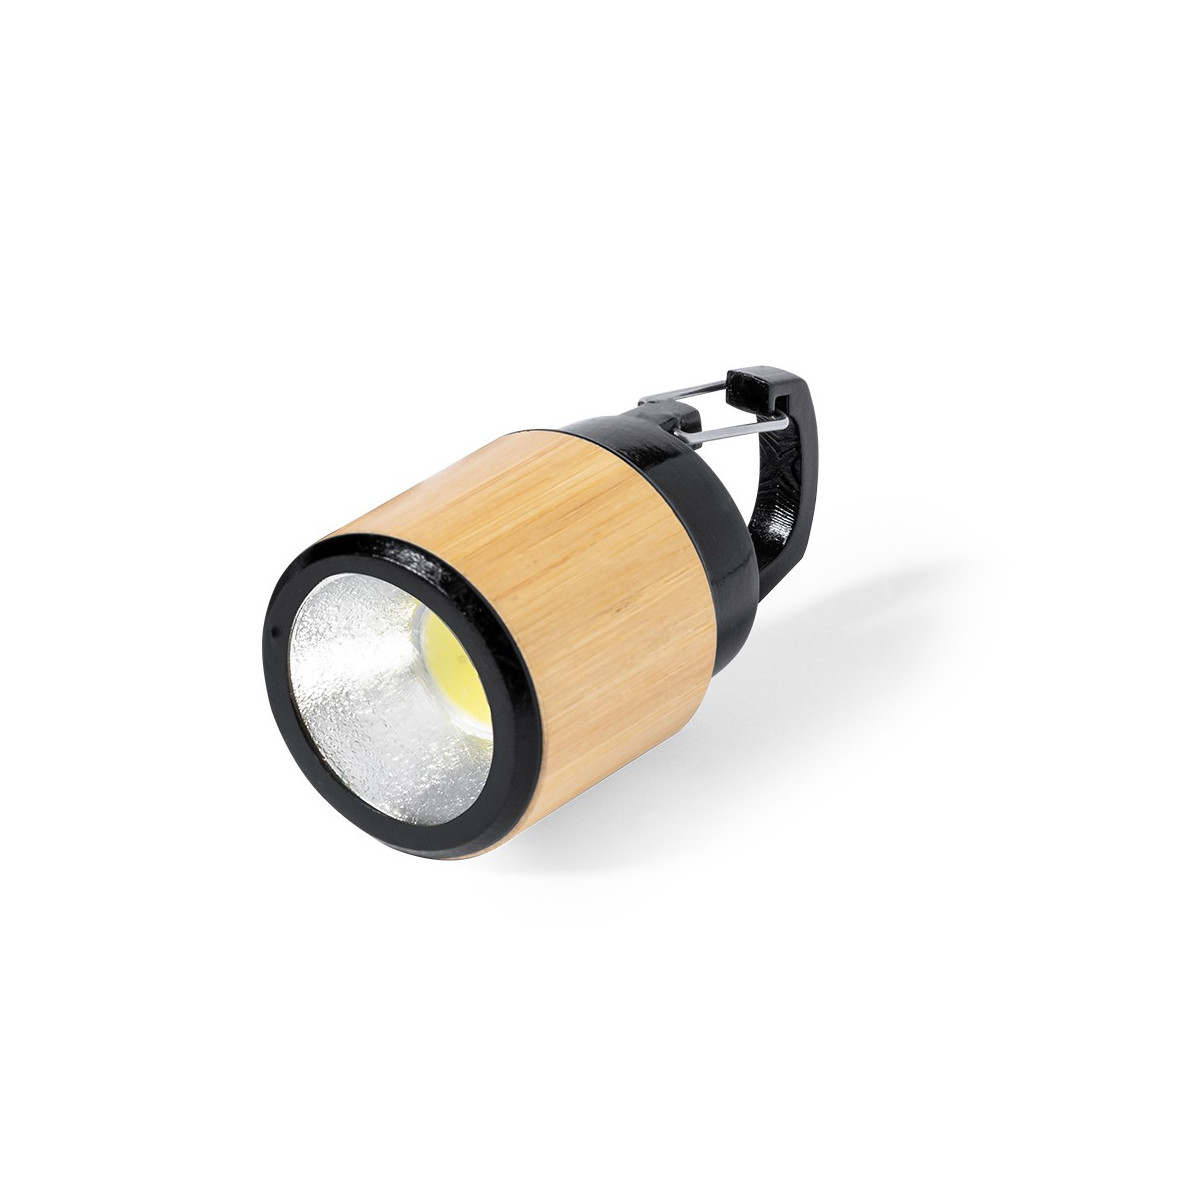 Lampe de poche led avec piles en bambou